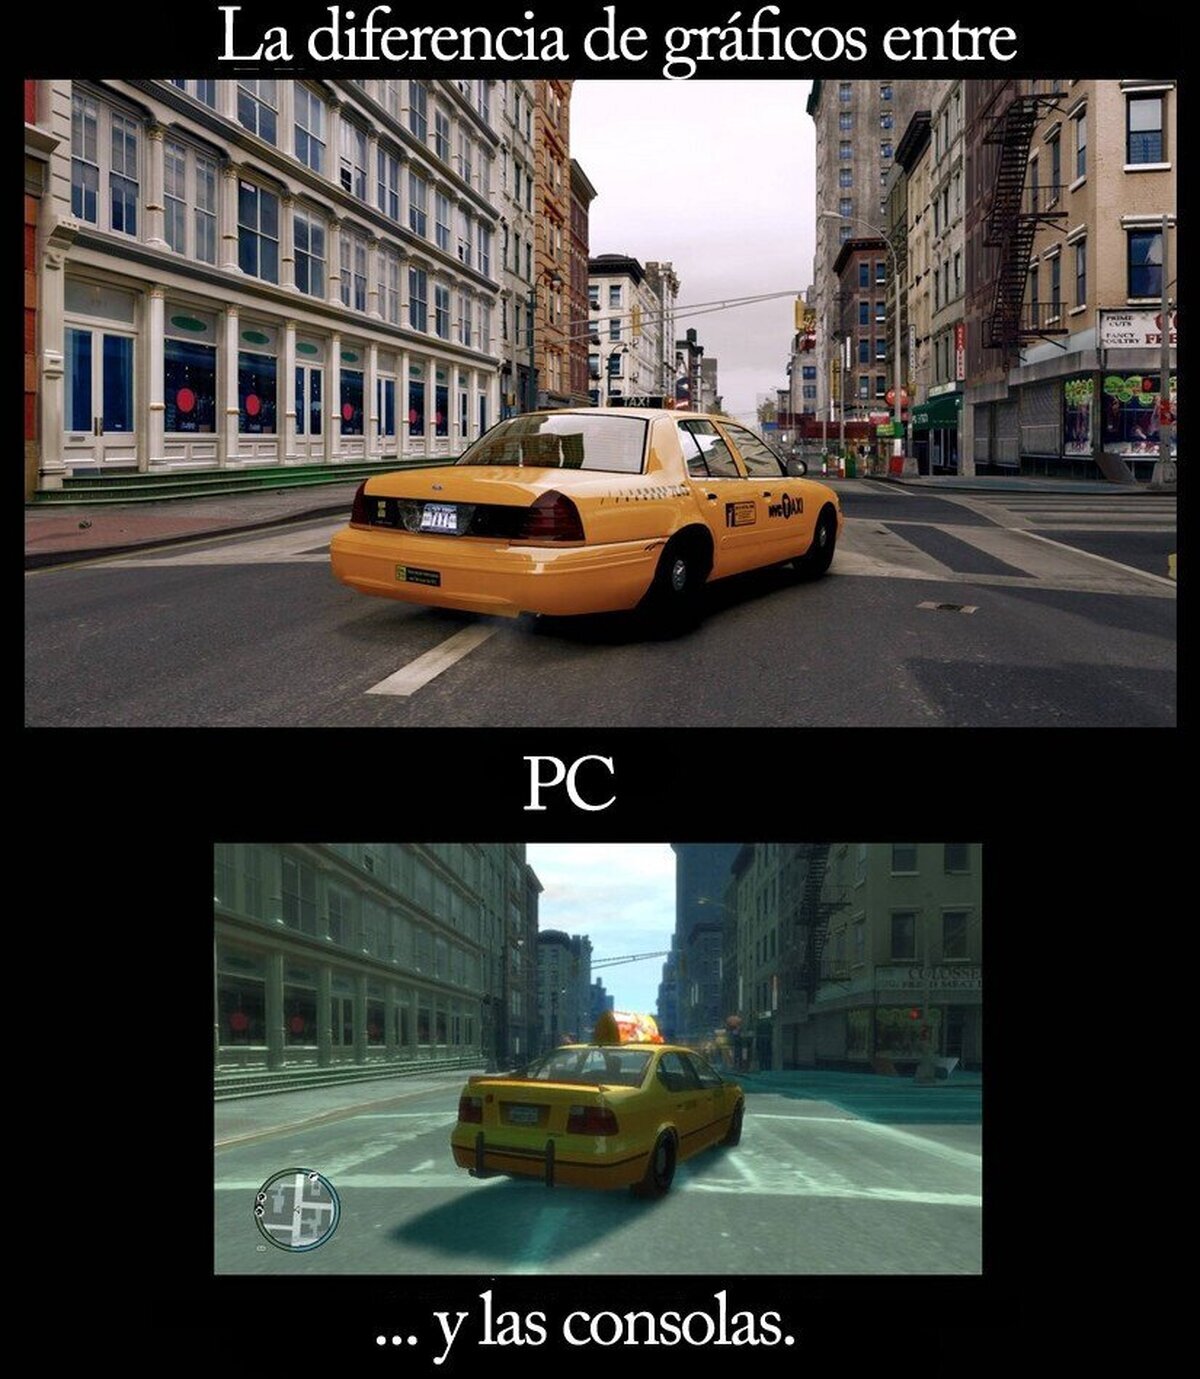 La diferencia entre el PC y las consolas